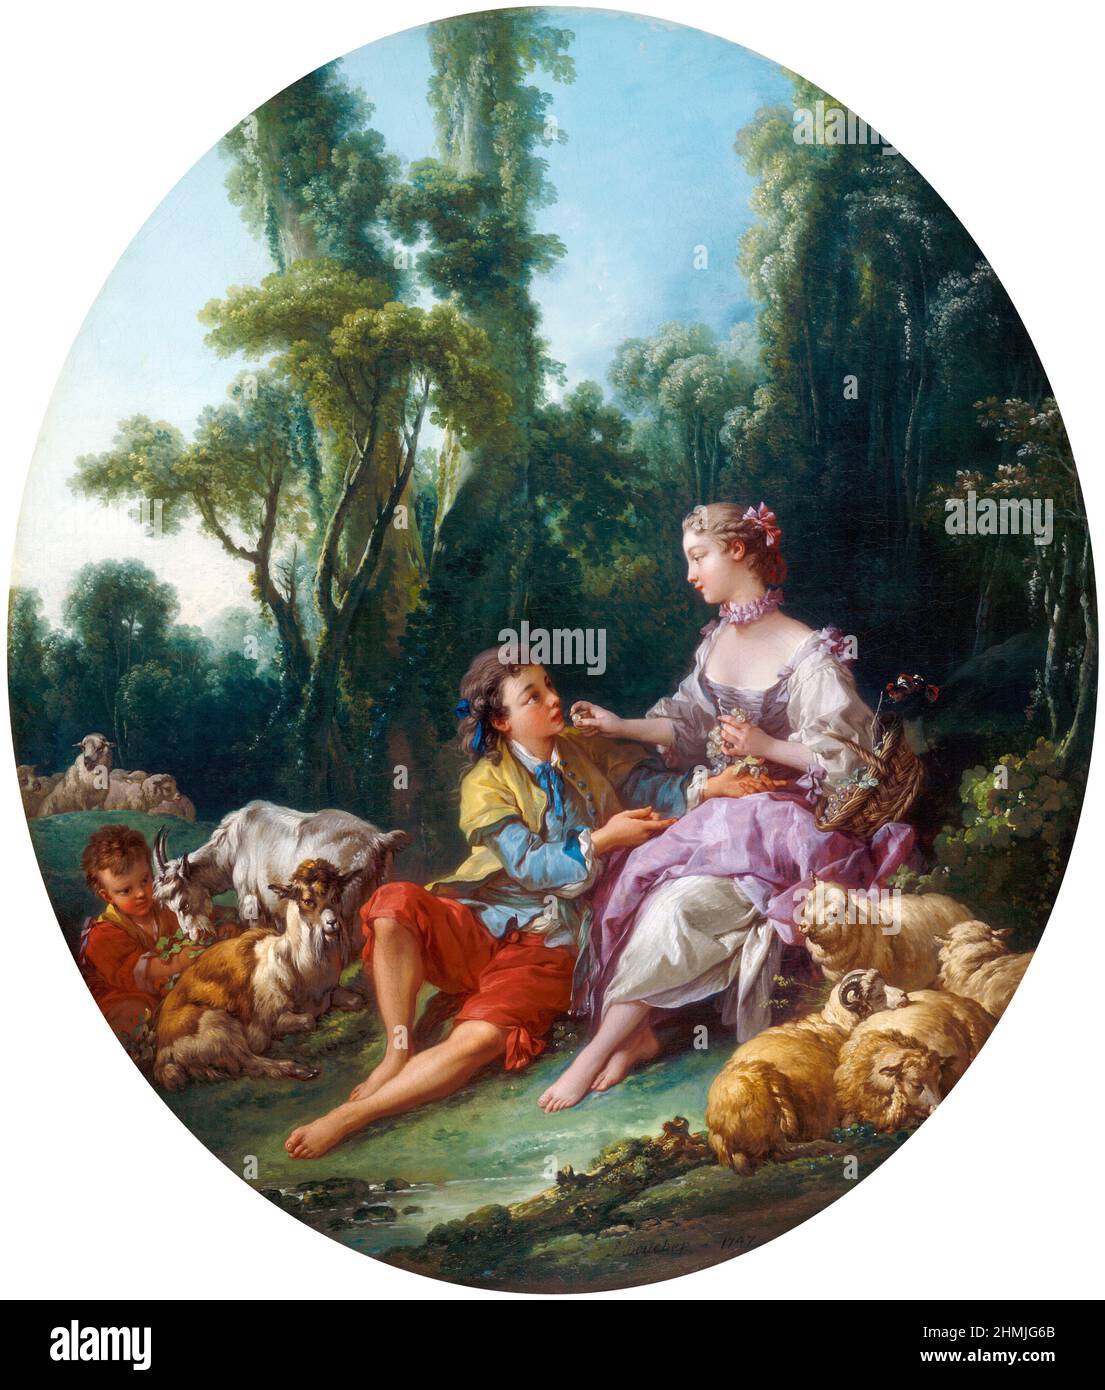 Denken sie über die Traube nach? (Pensent-ils au Rosinen?) Von Francois Boucher (1703-1770), Öl auf Leinwand, 1747 Stockfoto